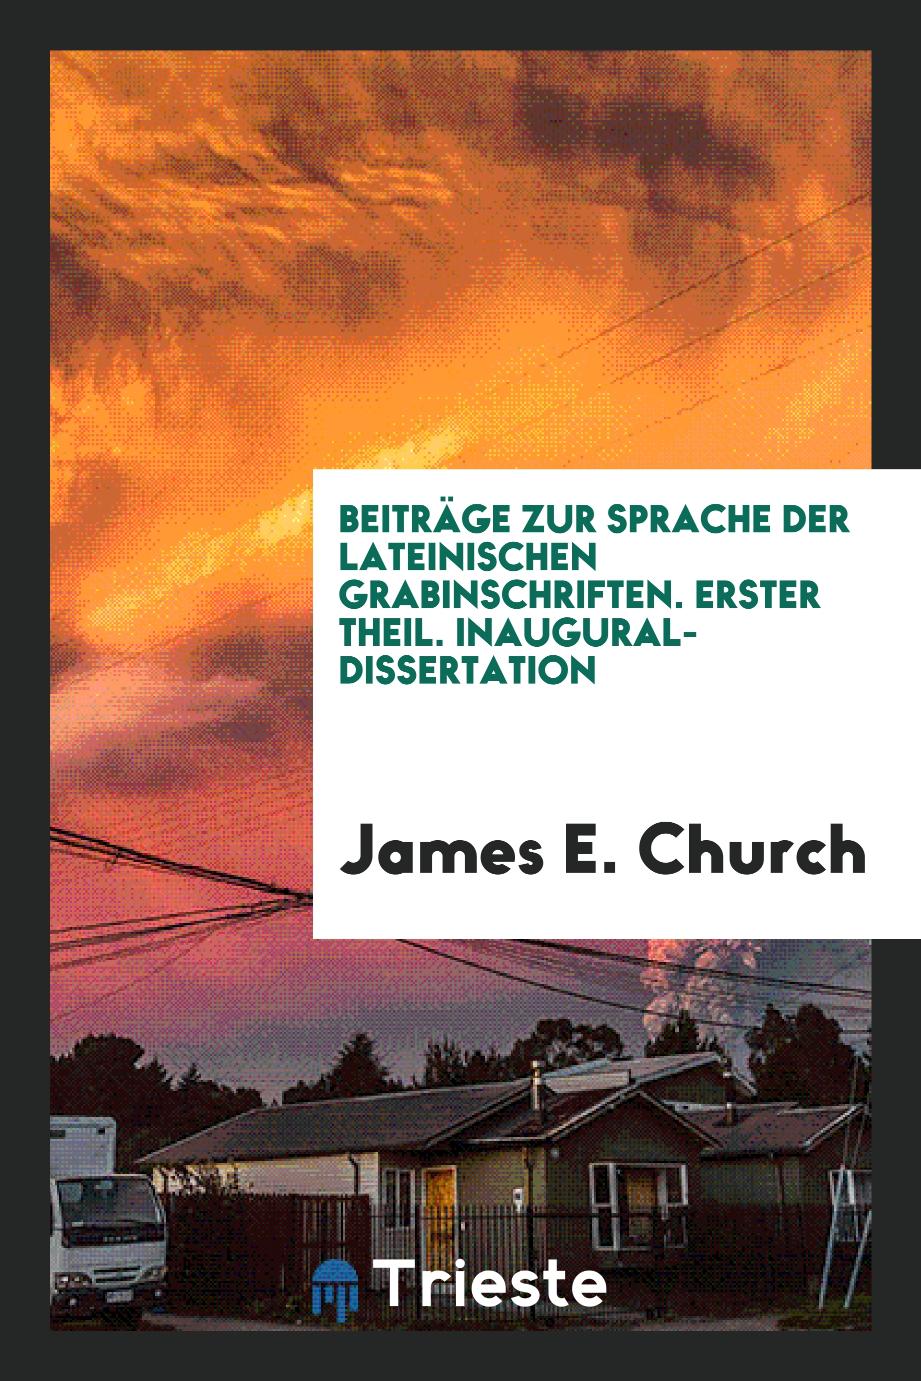 James E. Church - Beiträge zur Sprache der Lateinischen Grabinschriften. Erster Theil. Inaugural-Dissertation